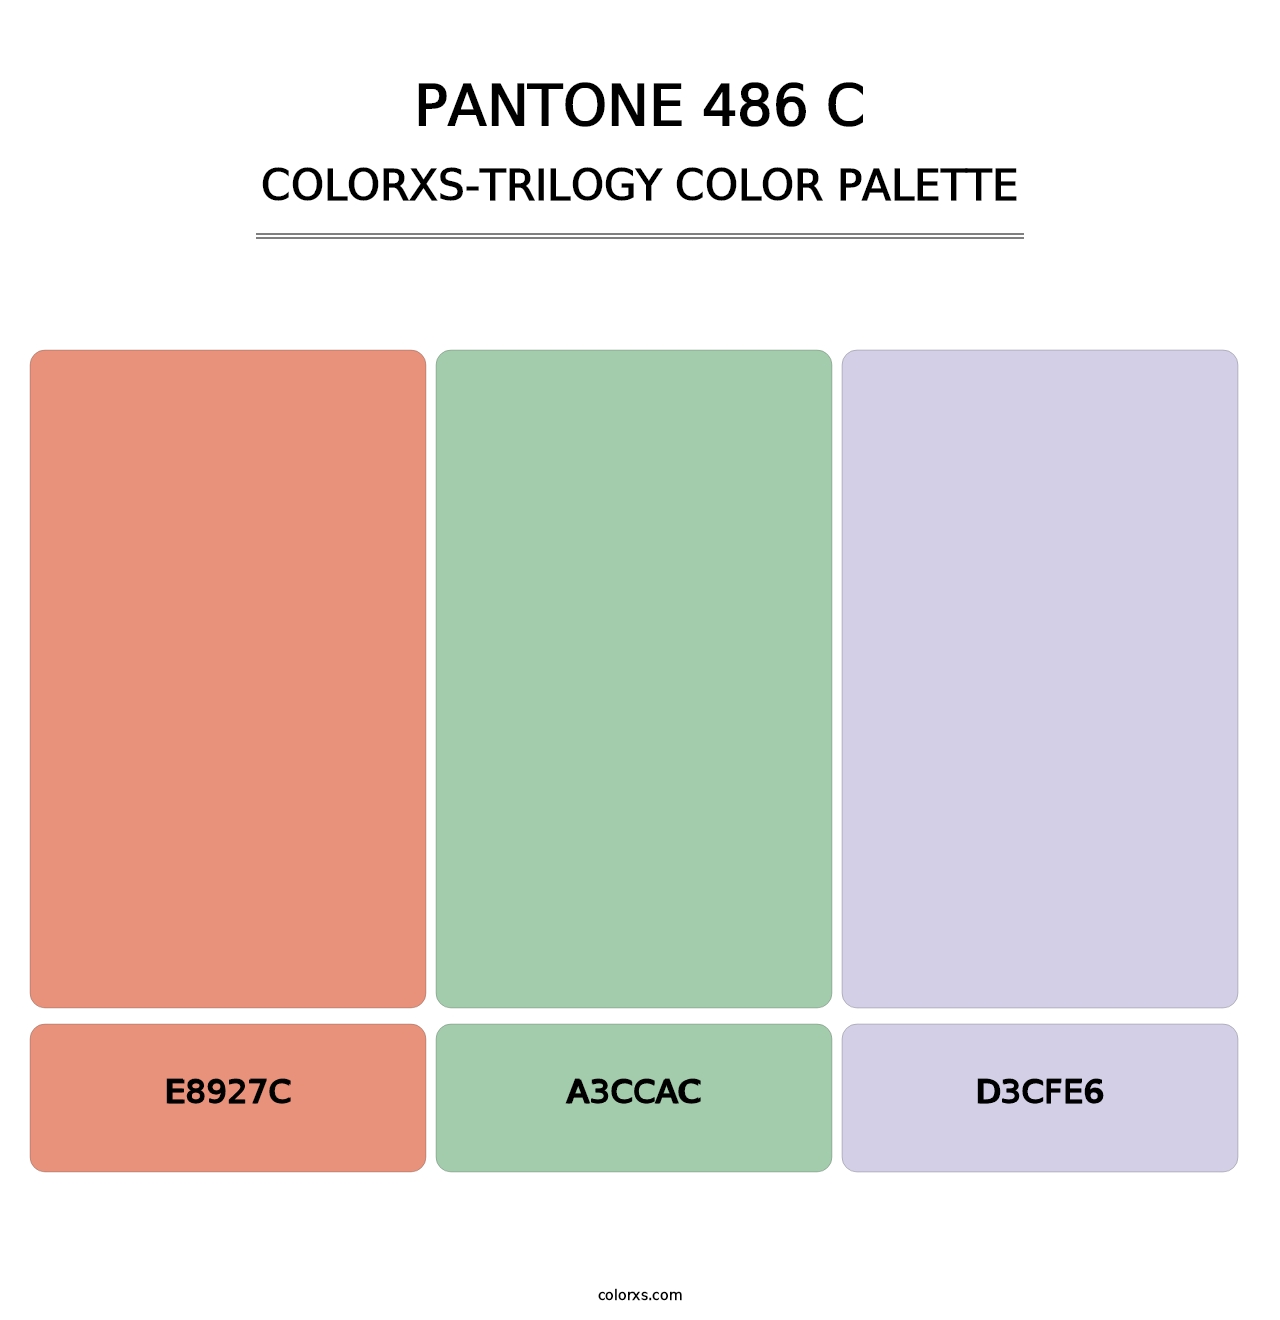 PANTONE 486 C - Colorxs Trilogy Palette